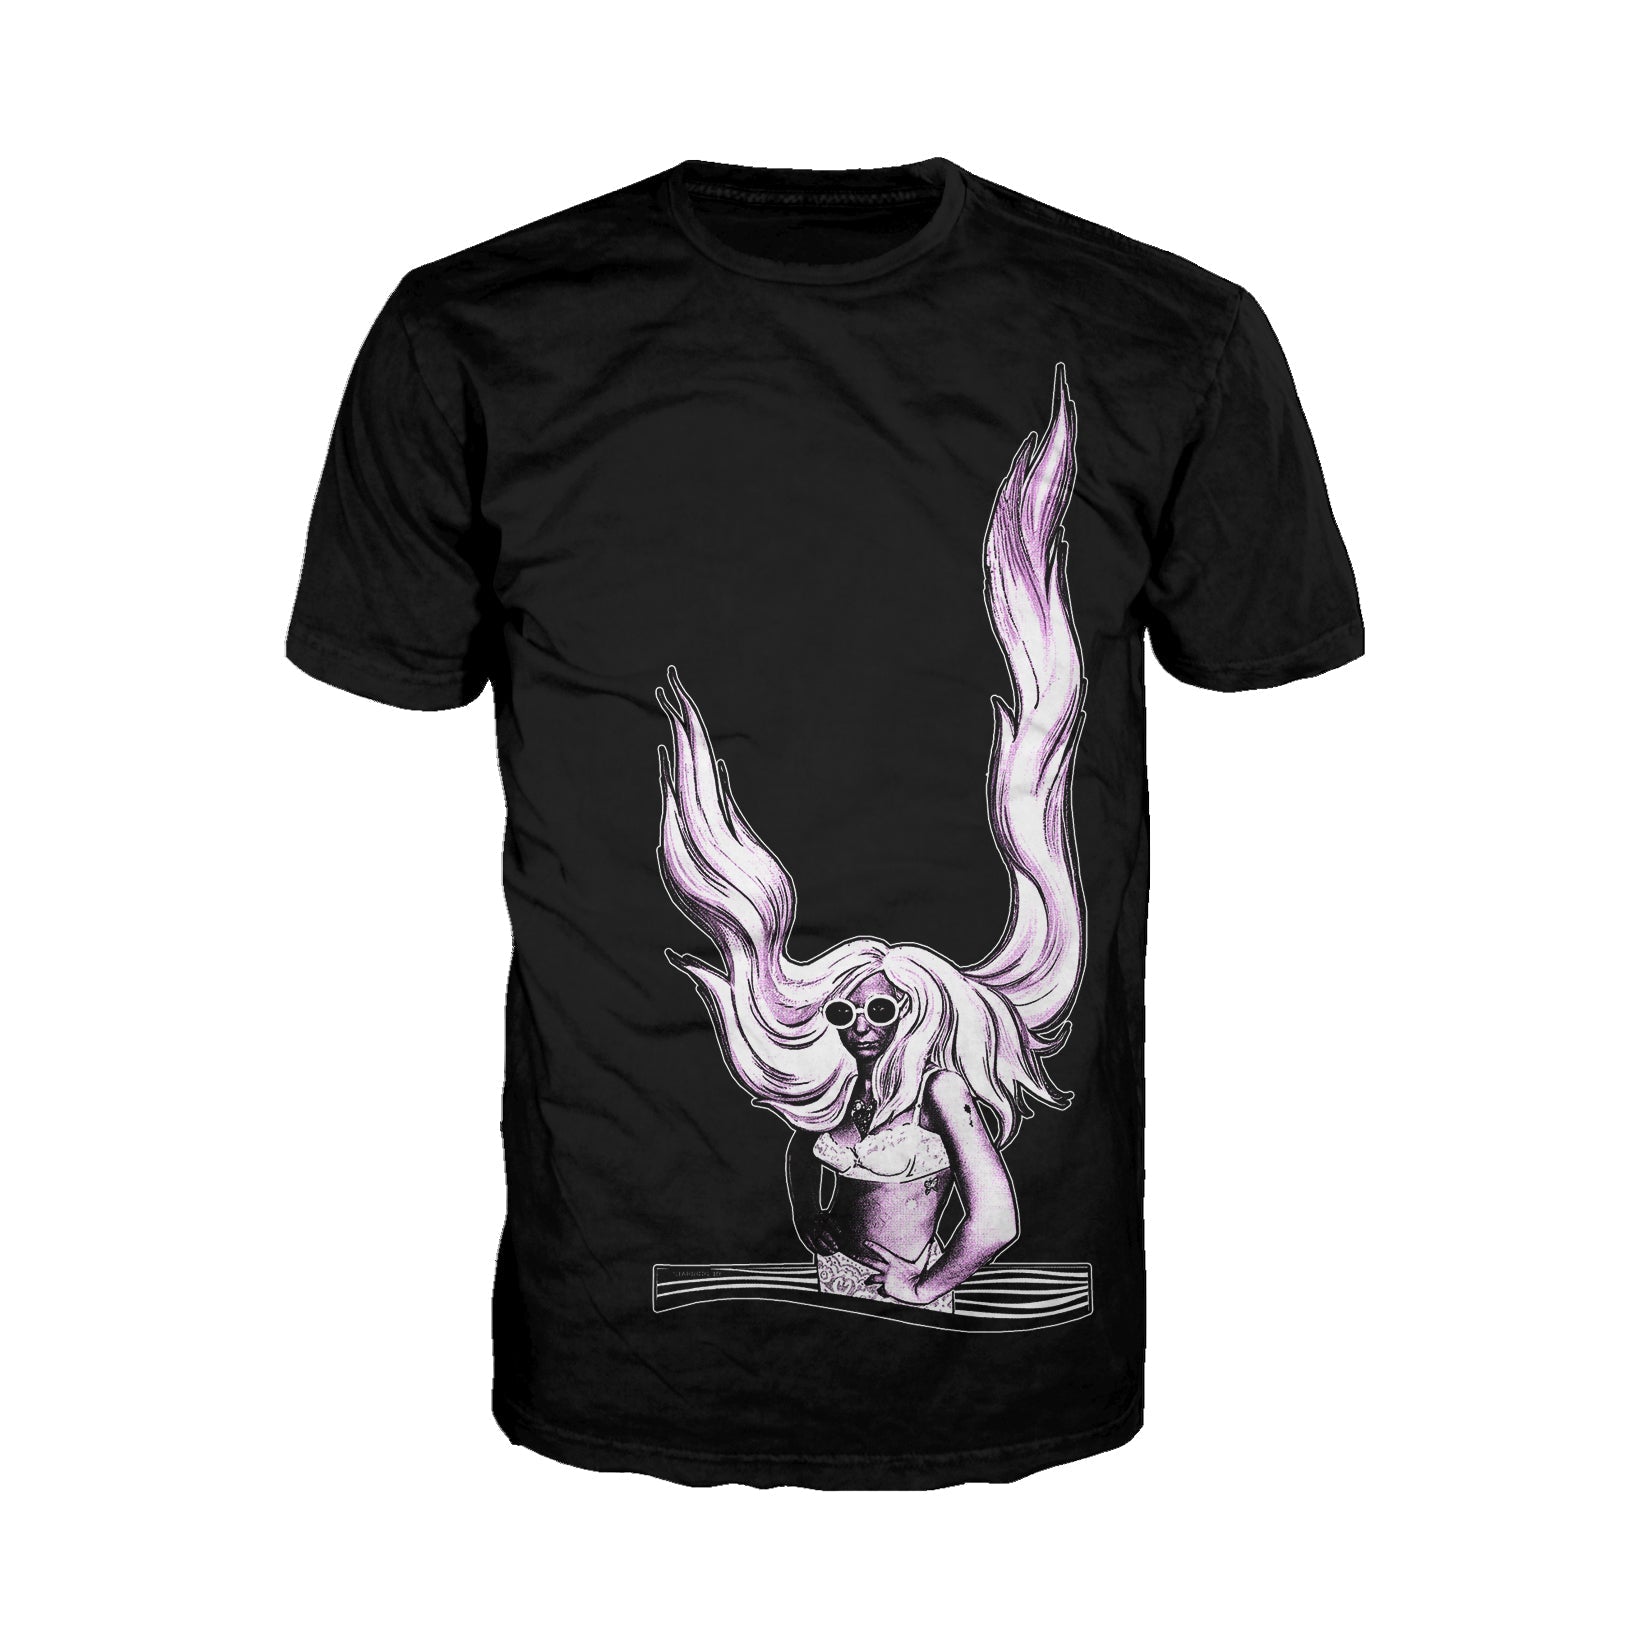 US Brand X Future Retro Rapunzel Official Men's T-shirt ()